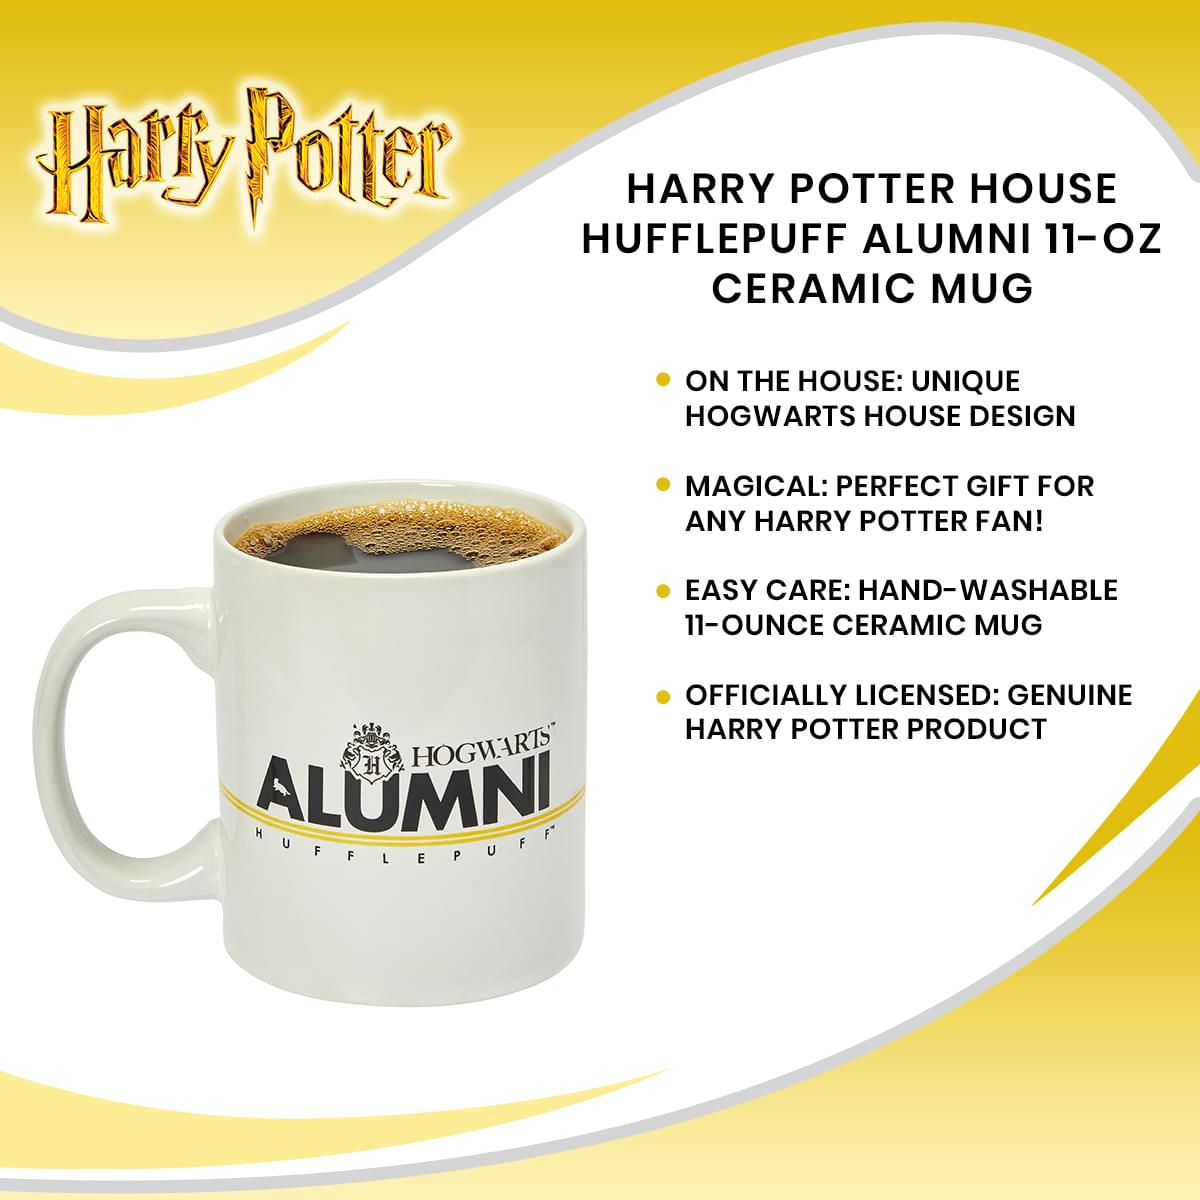 Harry Potter House Hufflepuff Alumni 11-Oz Ceramic Mug